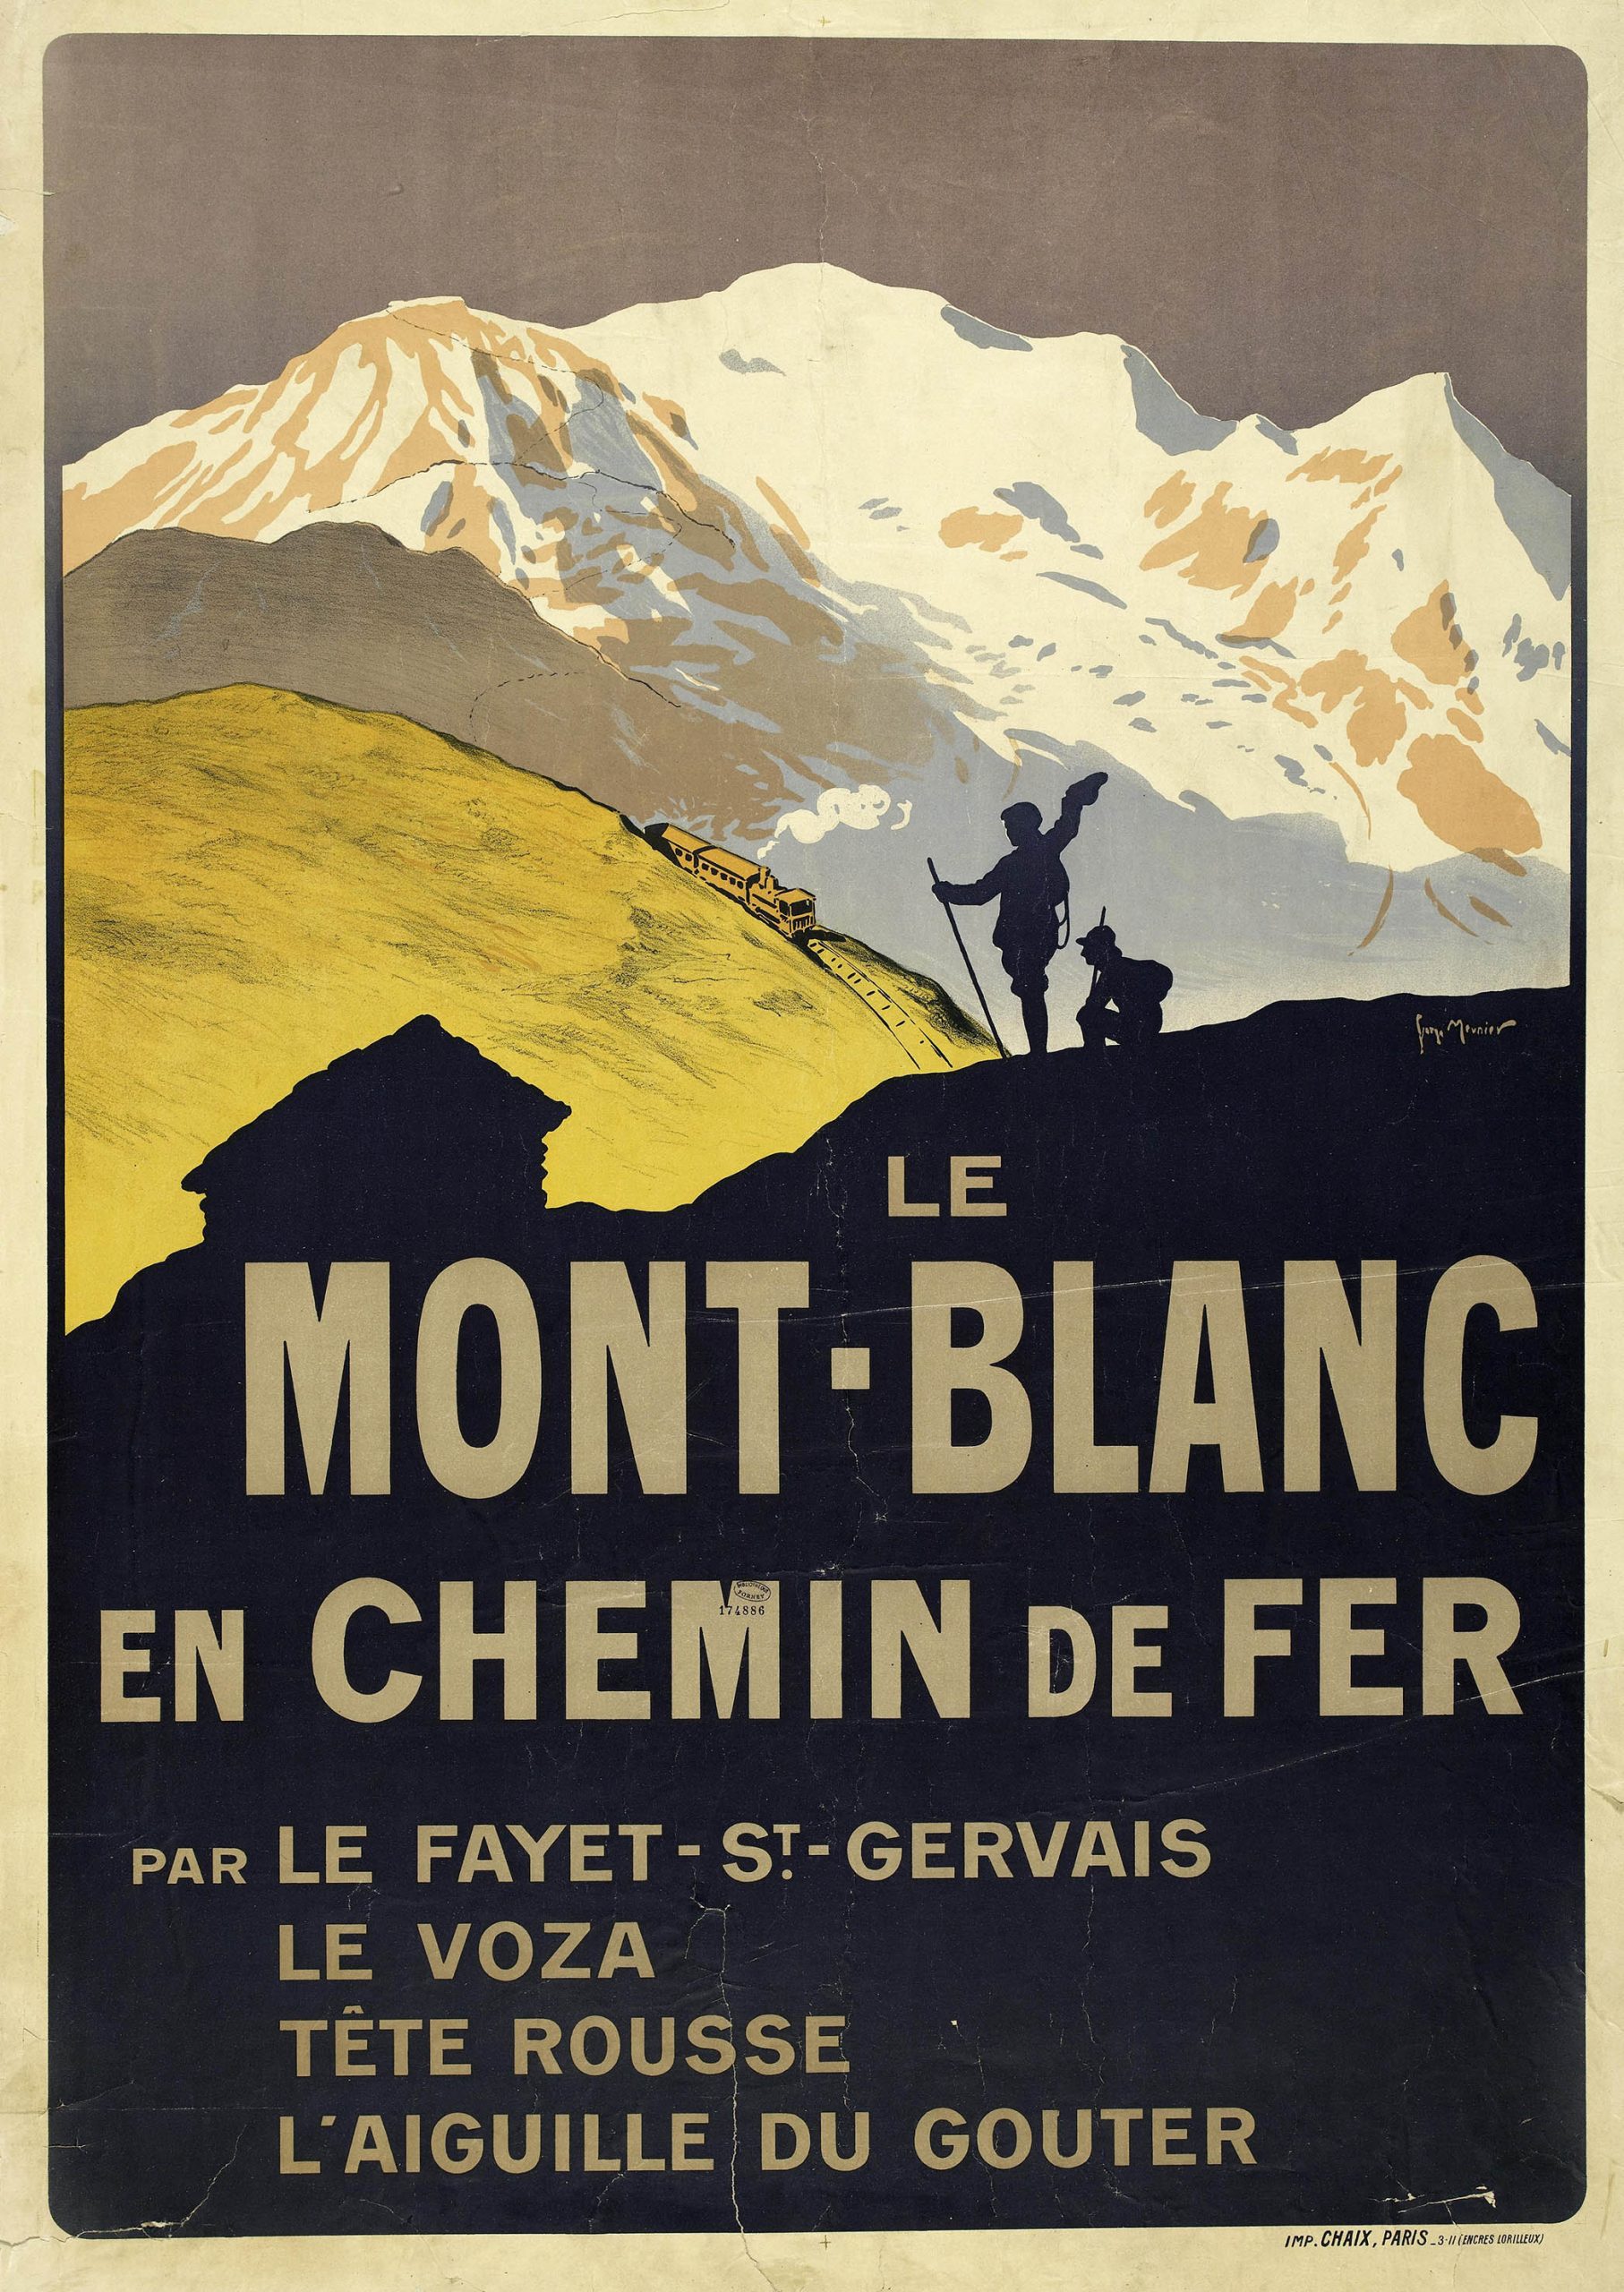 Affiche publicitaire des chemins de fer en passant par l'aiguille du Gouter dans le massif du Mont Blanc ©Ville de Paris 1911